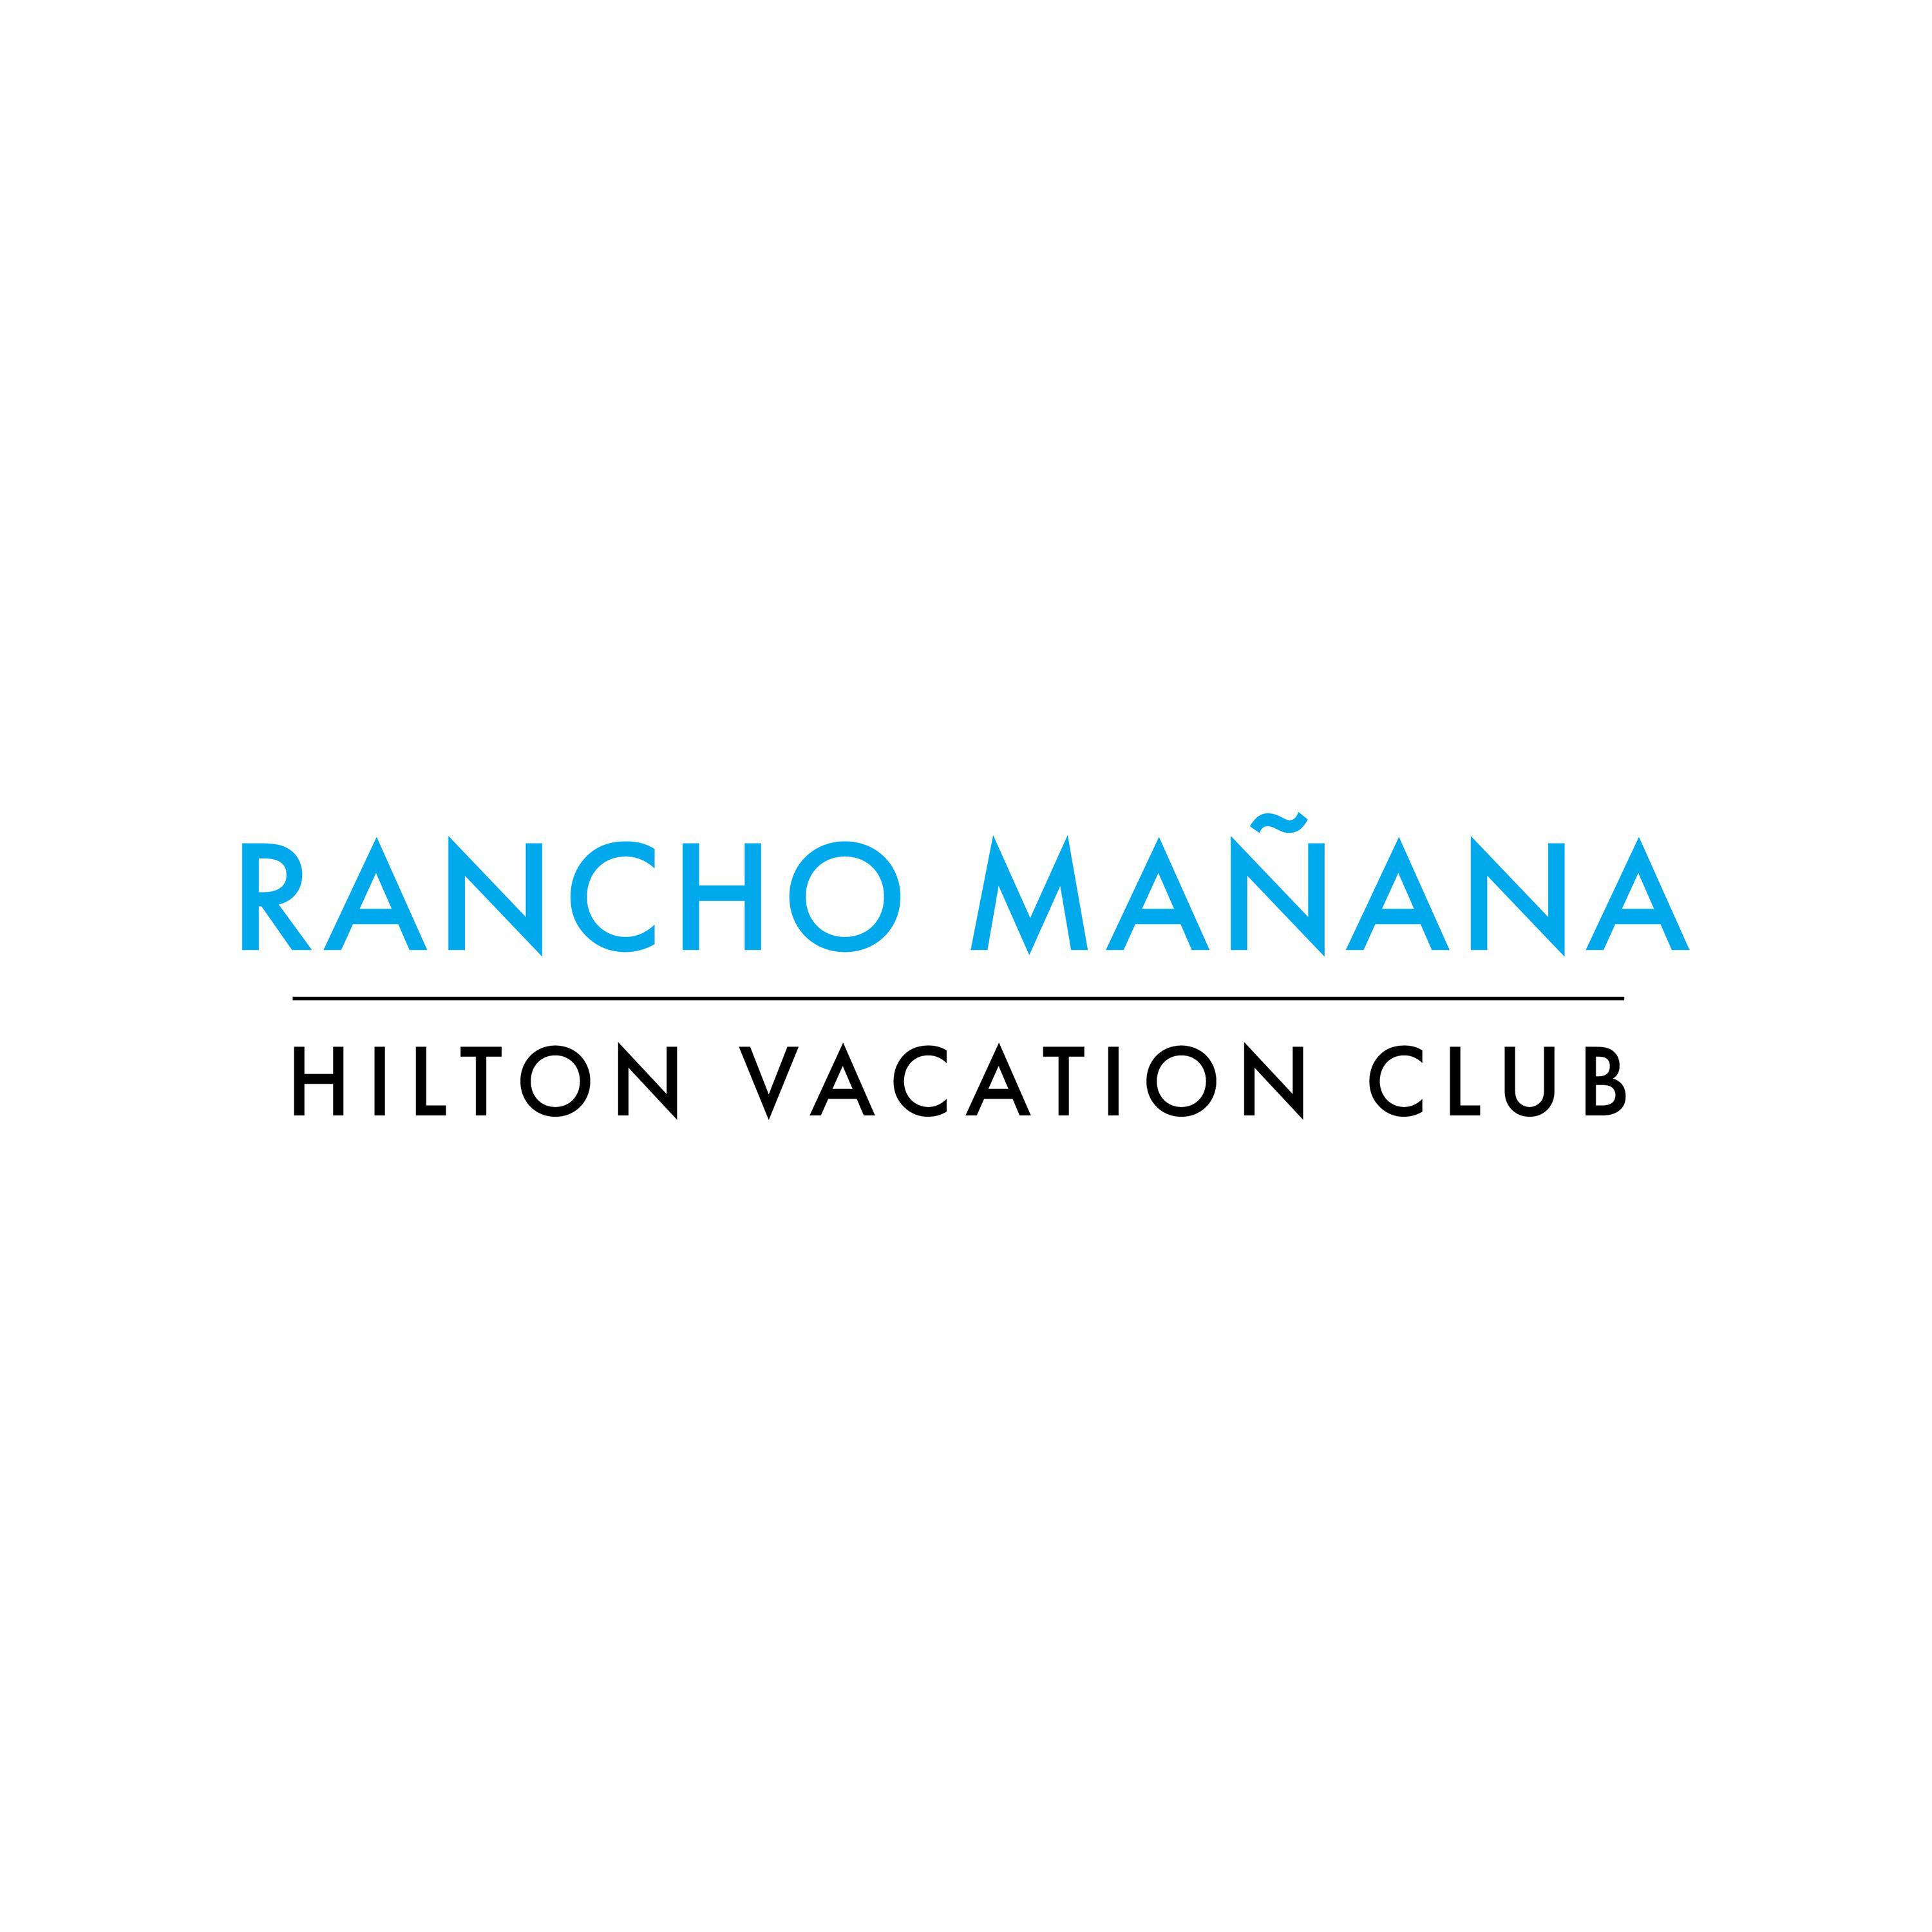 Hilton Vacation Club Rancho Manana Phoenix/Cave Creek - Cave Creek, AZ 85331 - (480)575-7900 | ShowMeLocal.com